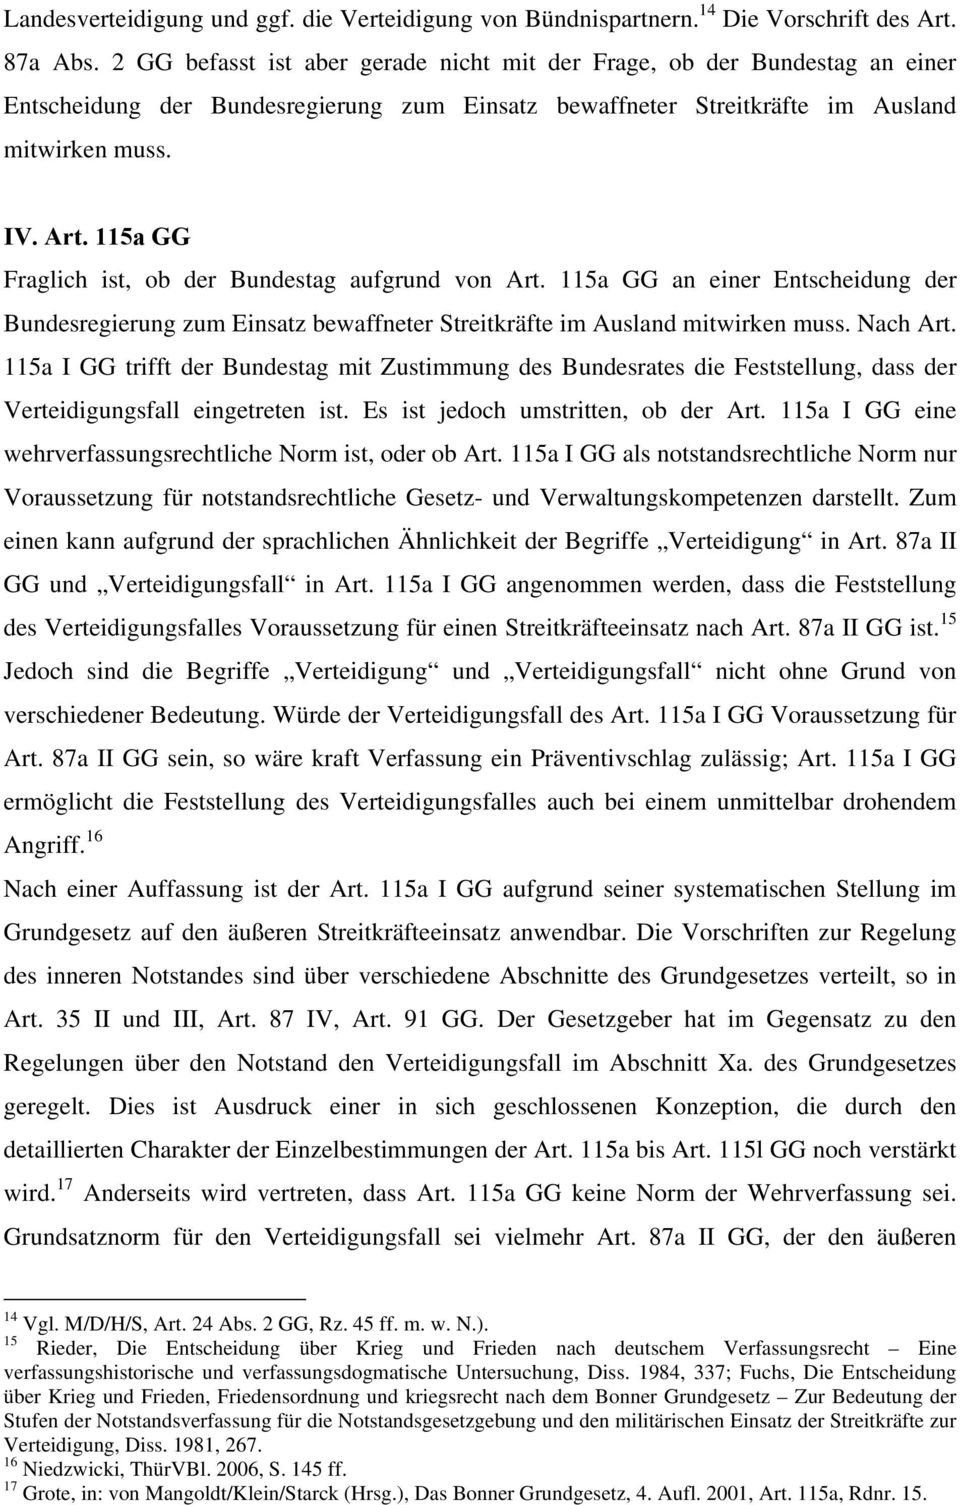 115a GG Fraglich ist, ob der Bundestag aufgrund von Art. 115a GG an einer Entscheidung der Bundesregierung zum Einsatz bewaffneter Streitkräfte im Ausland mitwirken muss. Nach Art.